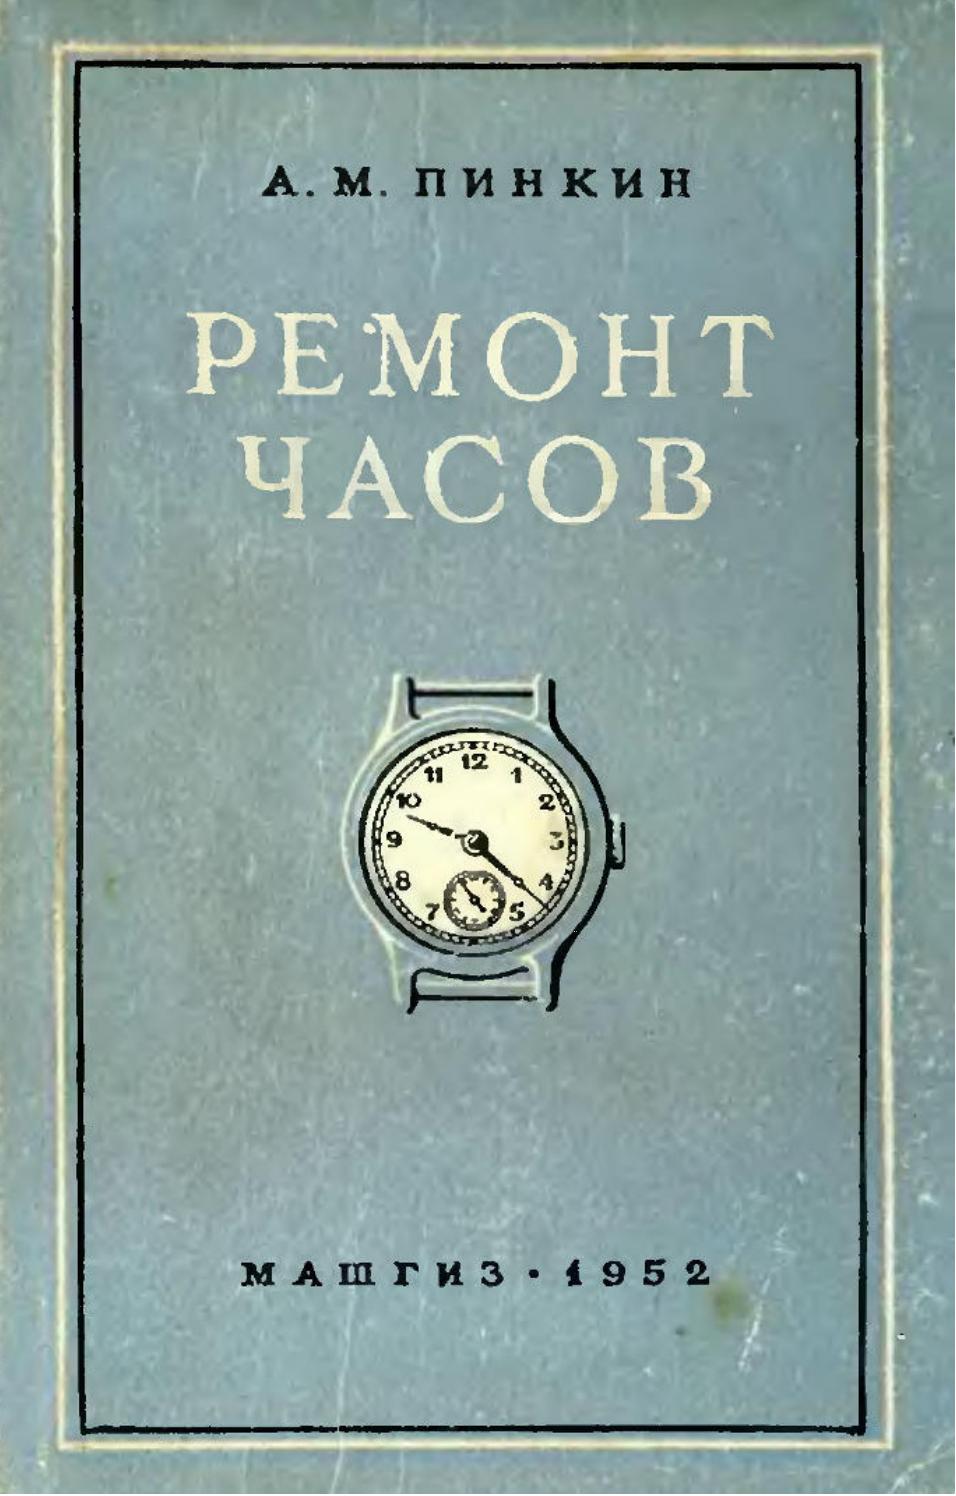 Ремонт часов-1952 ссср